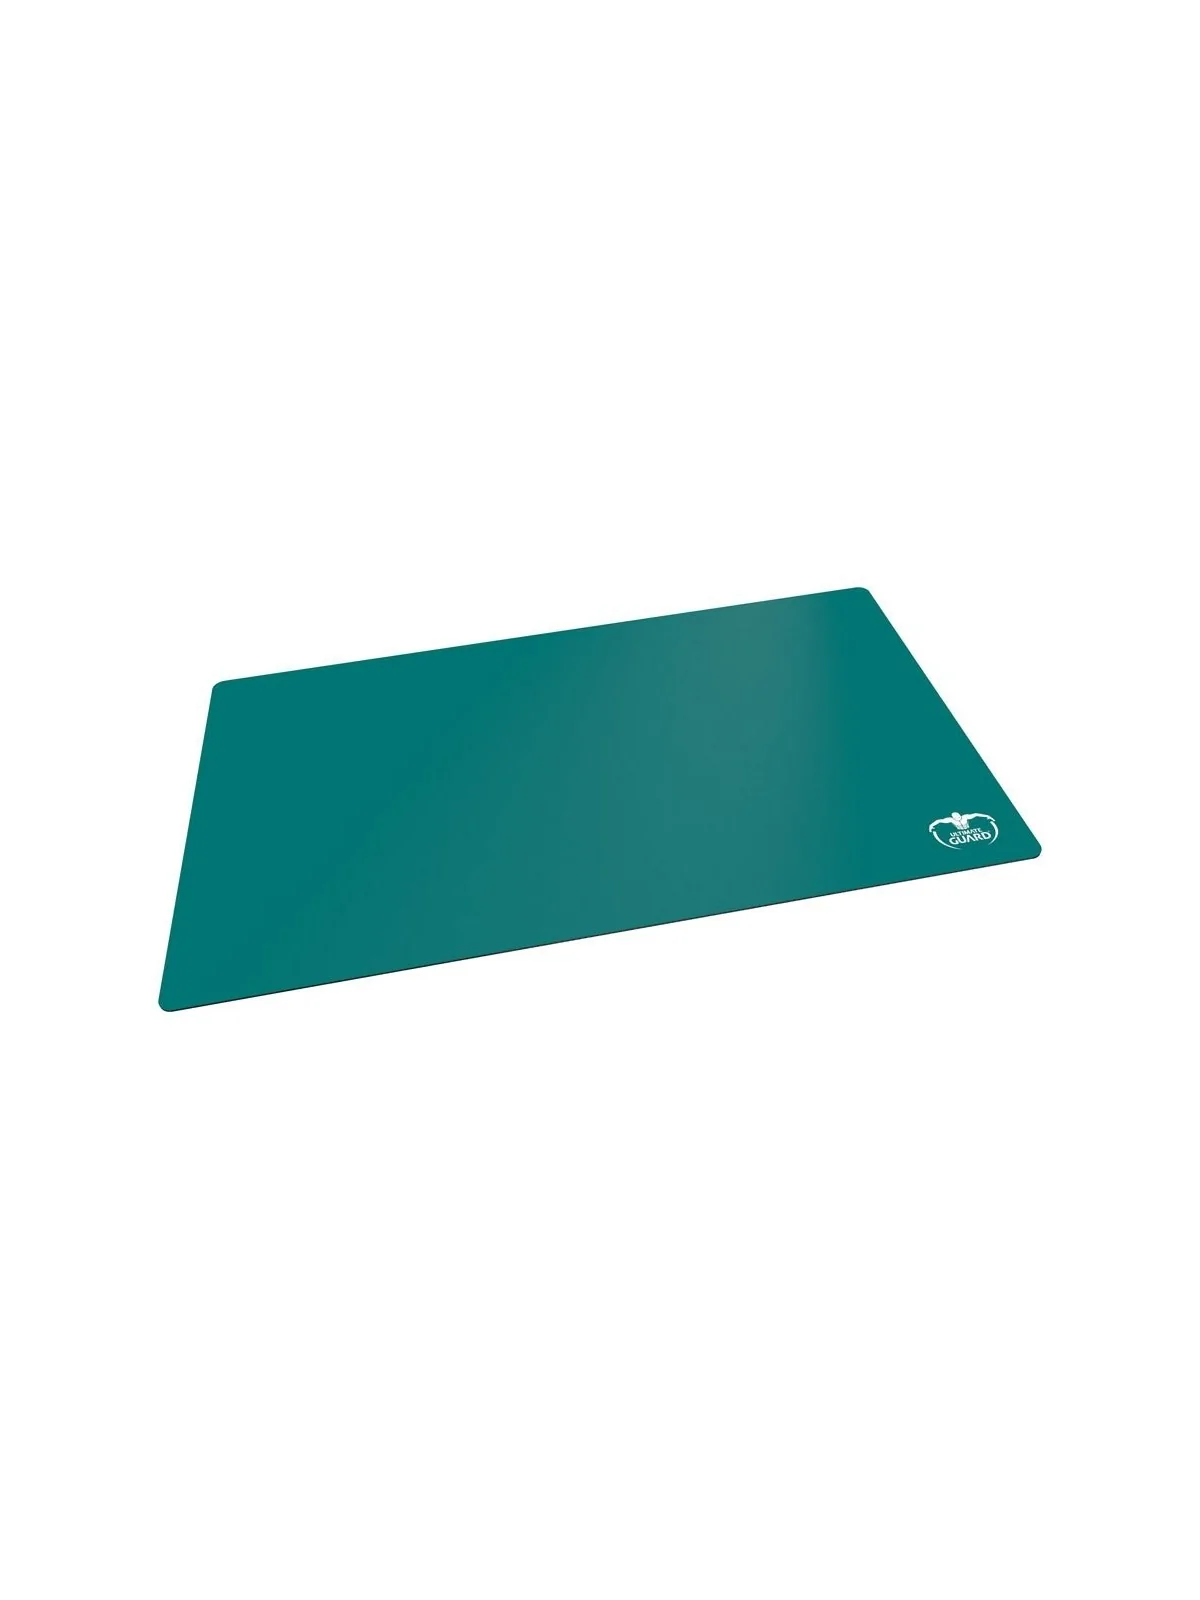 Comprar Ultimate Guard Tapete Monochrome Gasolina Azul 61 x 35 cm bara